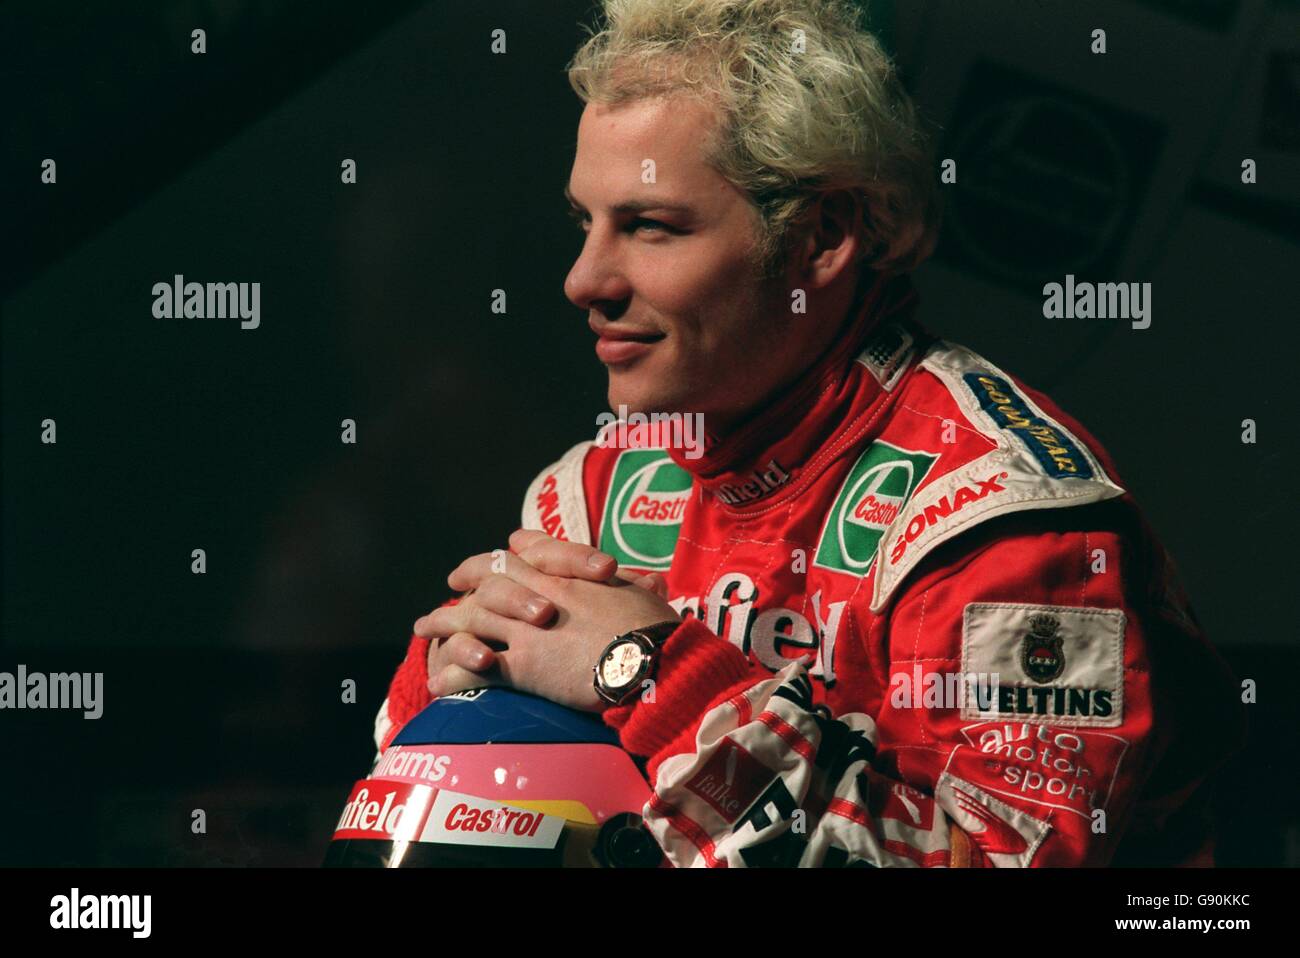 Formula uno Motor Racing - lancio Williams - Silverstone. Campione del mondo Jacques Villeneuve Foto Stock